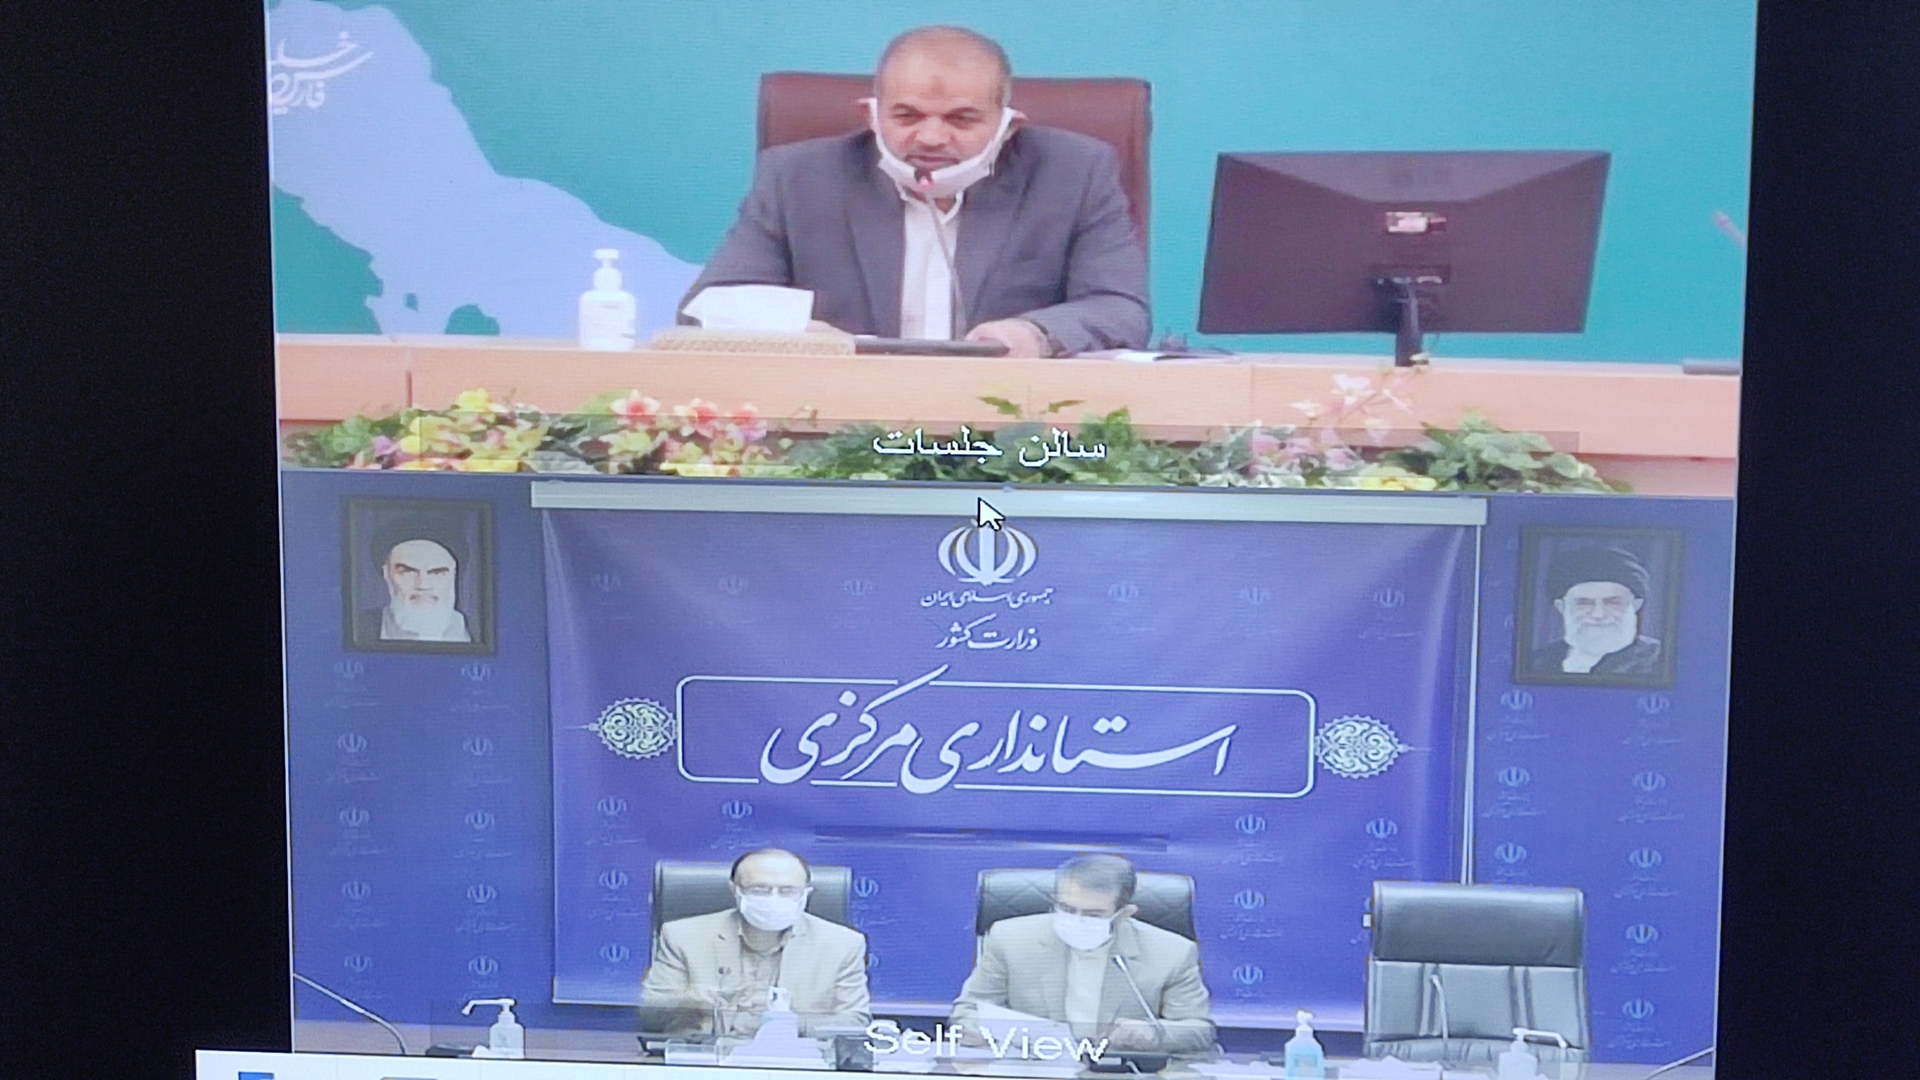 جلسه ویدئو کنفرانس وزیر کشور با استانداری های سرارکشور در خصوص سند تحول دولت مردمی